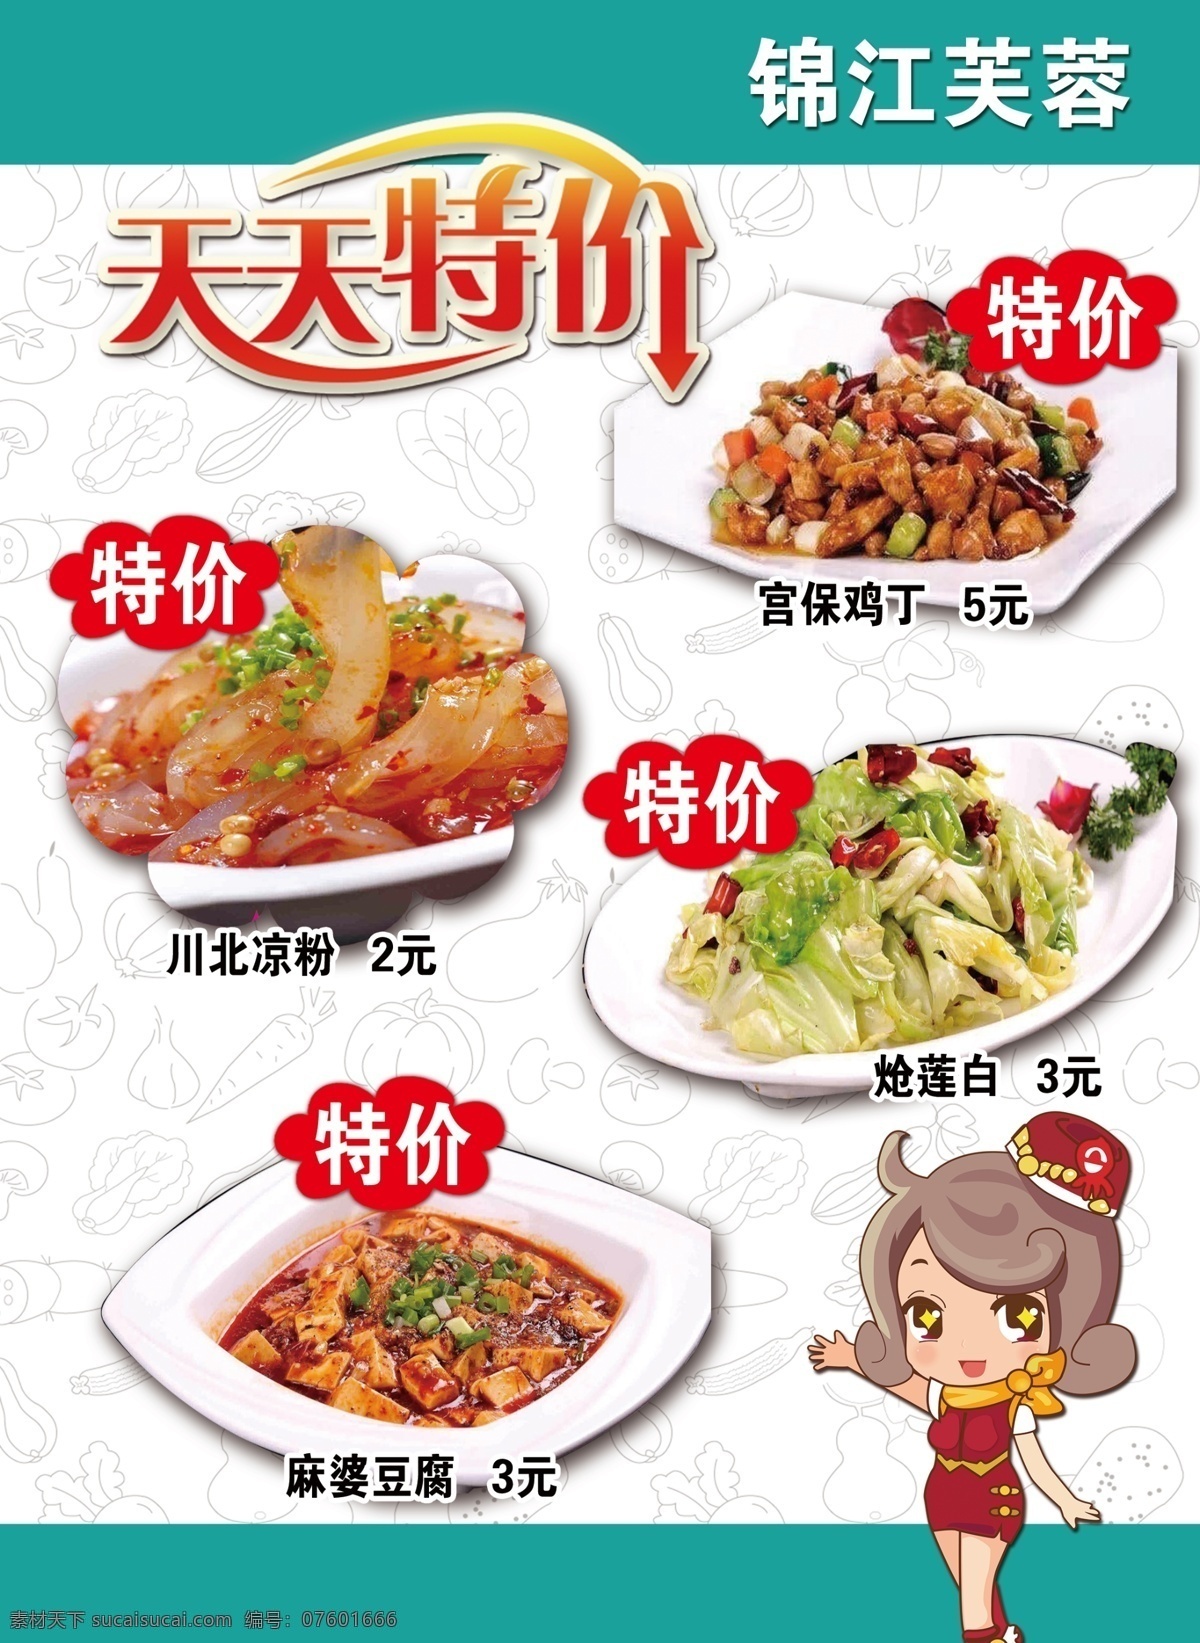 孔 田 天天 特价 菜单 促销 海报 天天特价 卡通美女 卡通食材 特价菜 活动海报